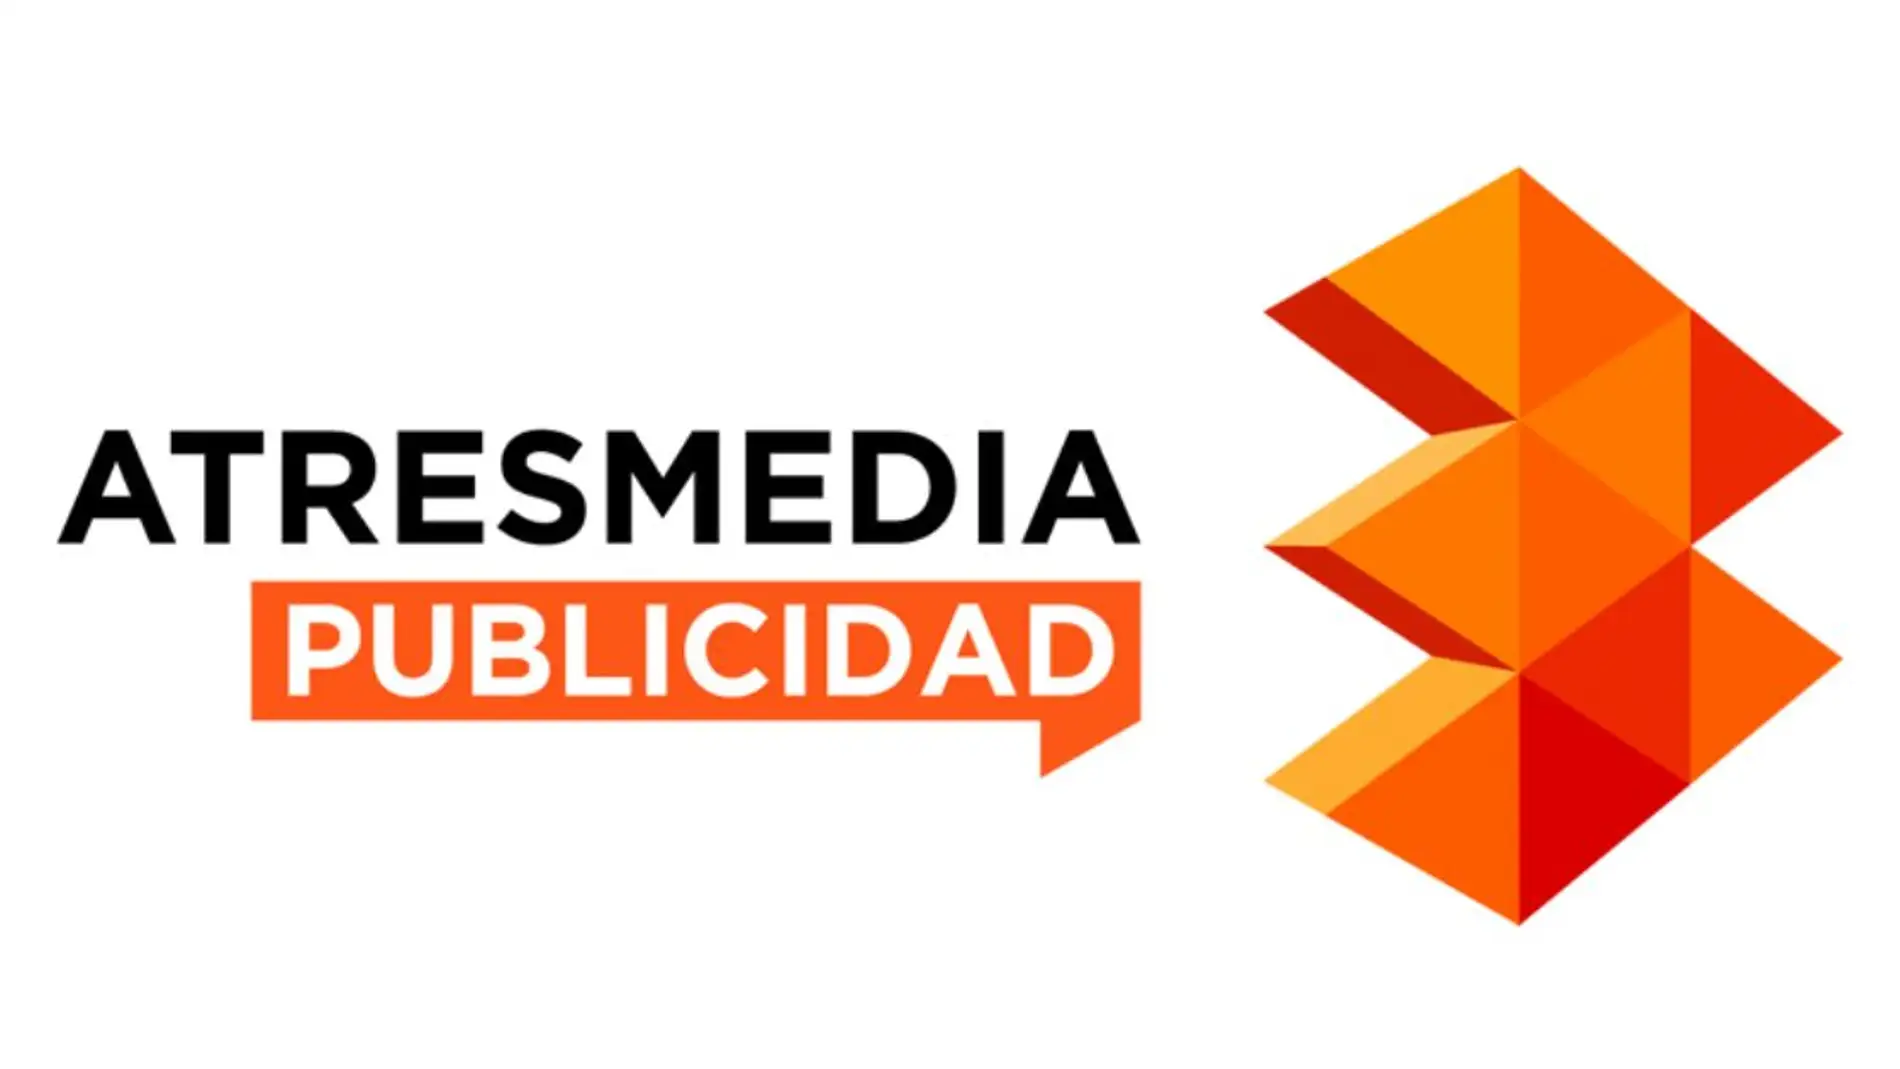 Atresmedia Publicidad